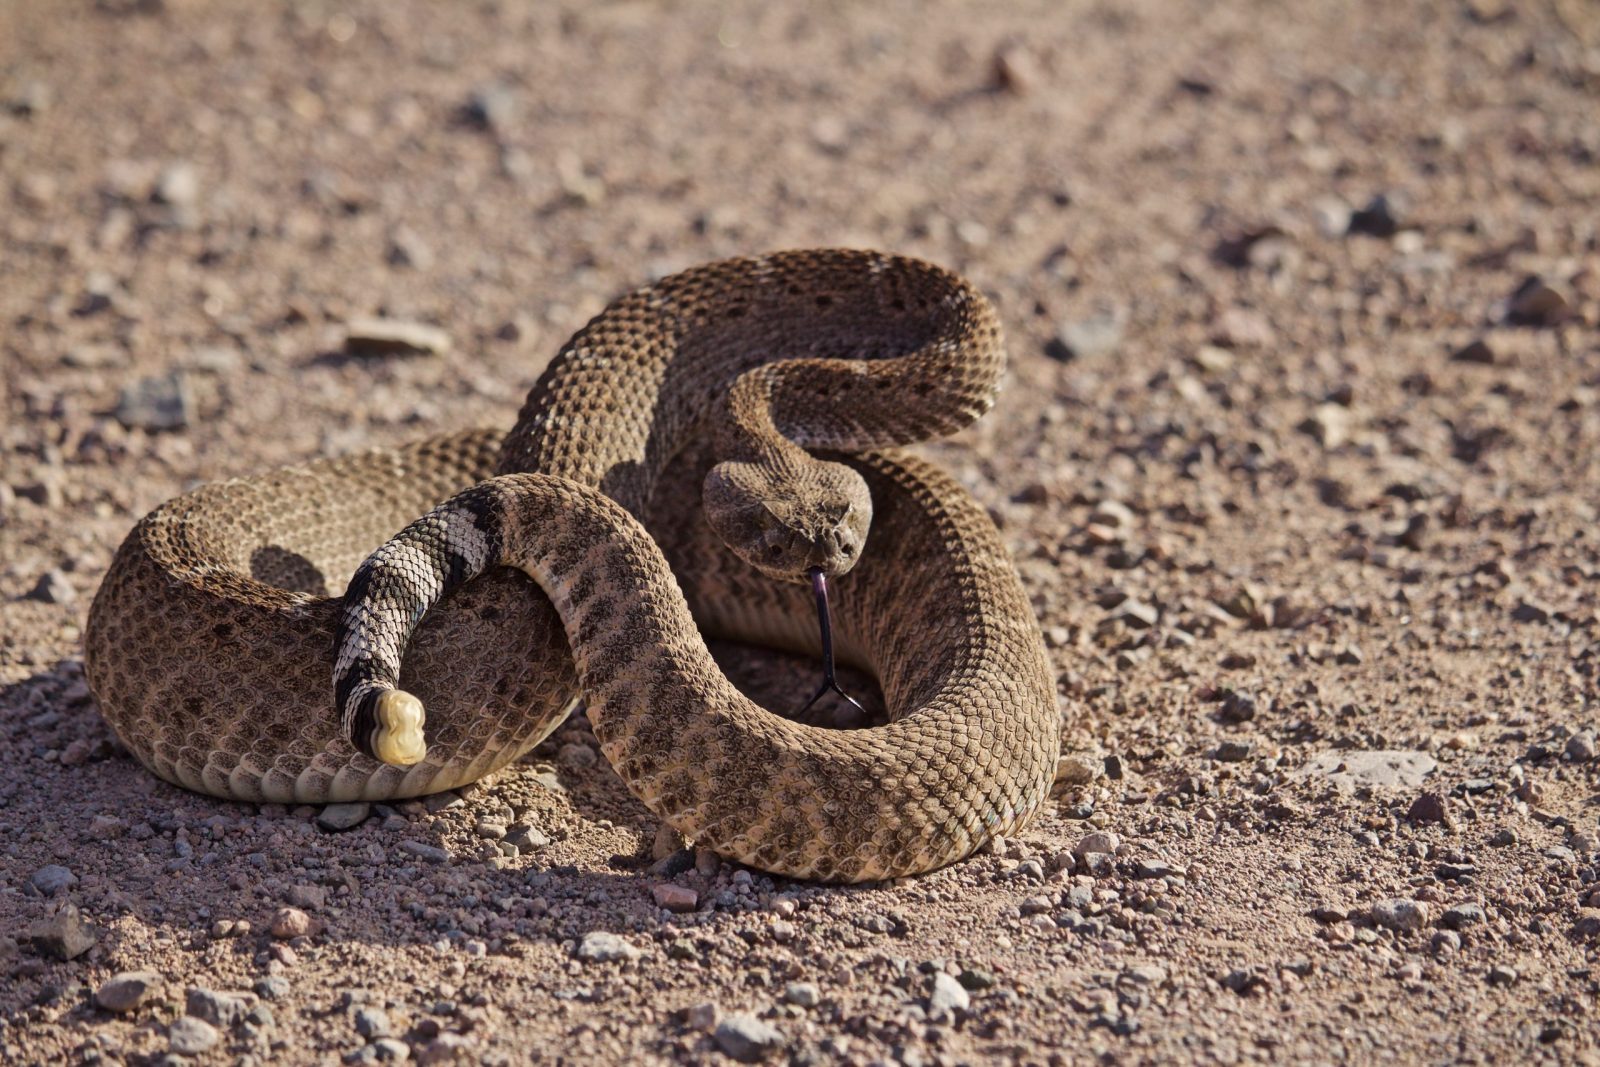 Coiled rattlesnake on gravel